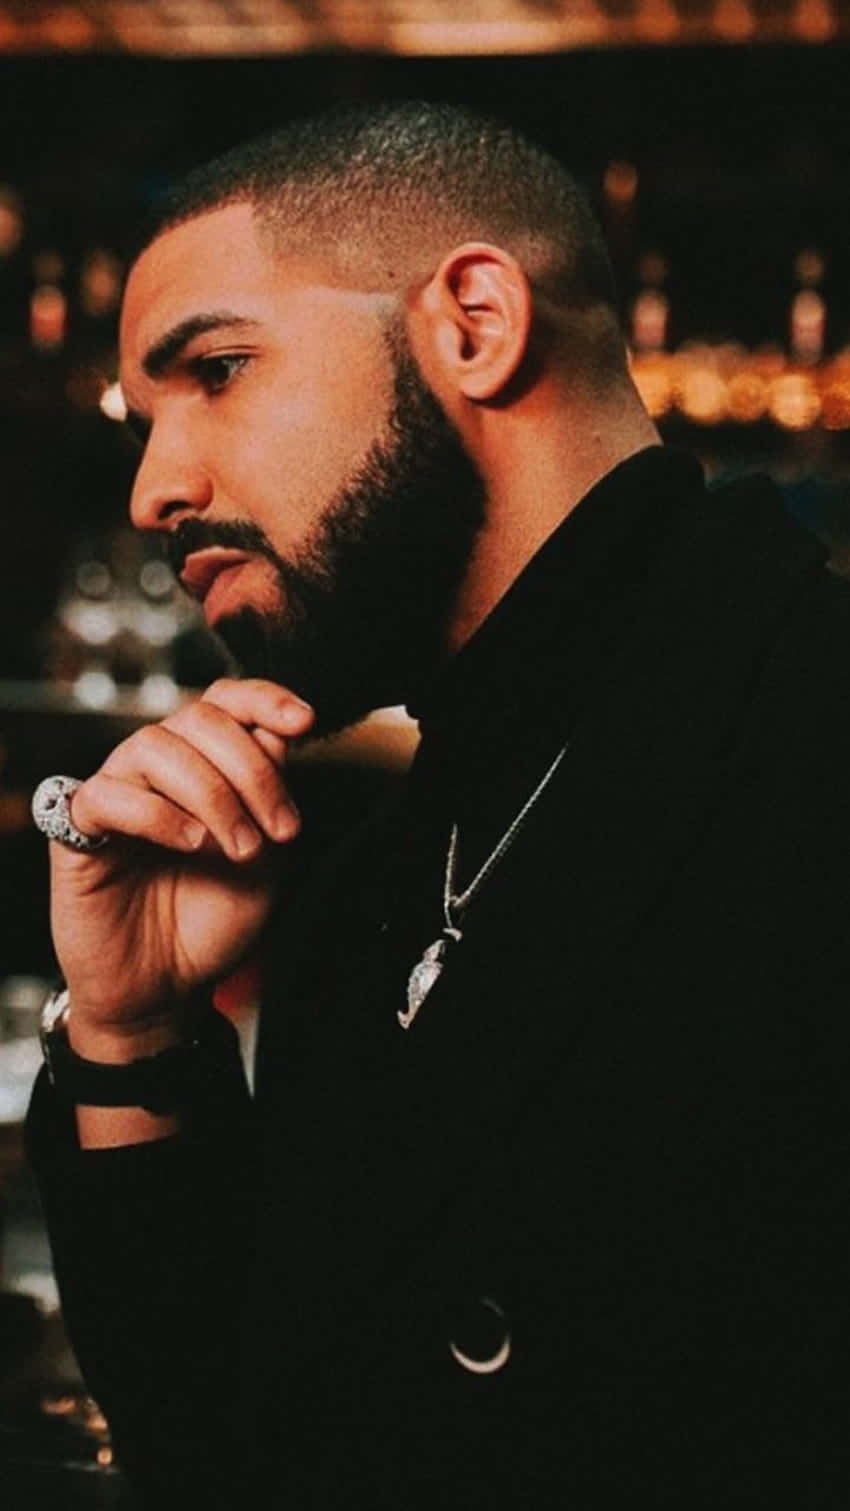 Aesthetic Drake is Here Wallpaper